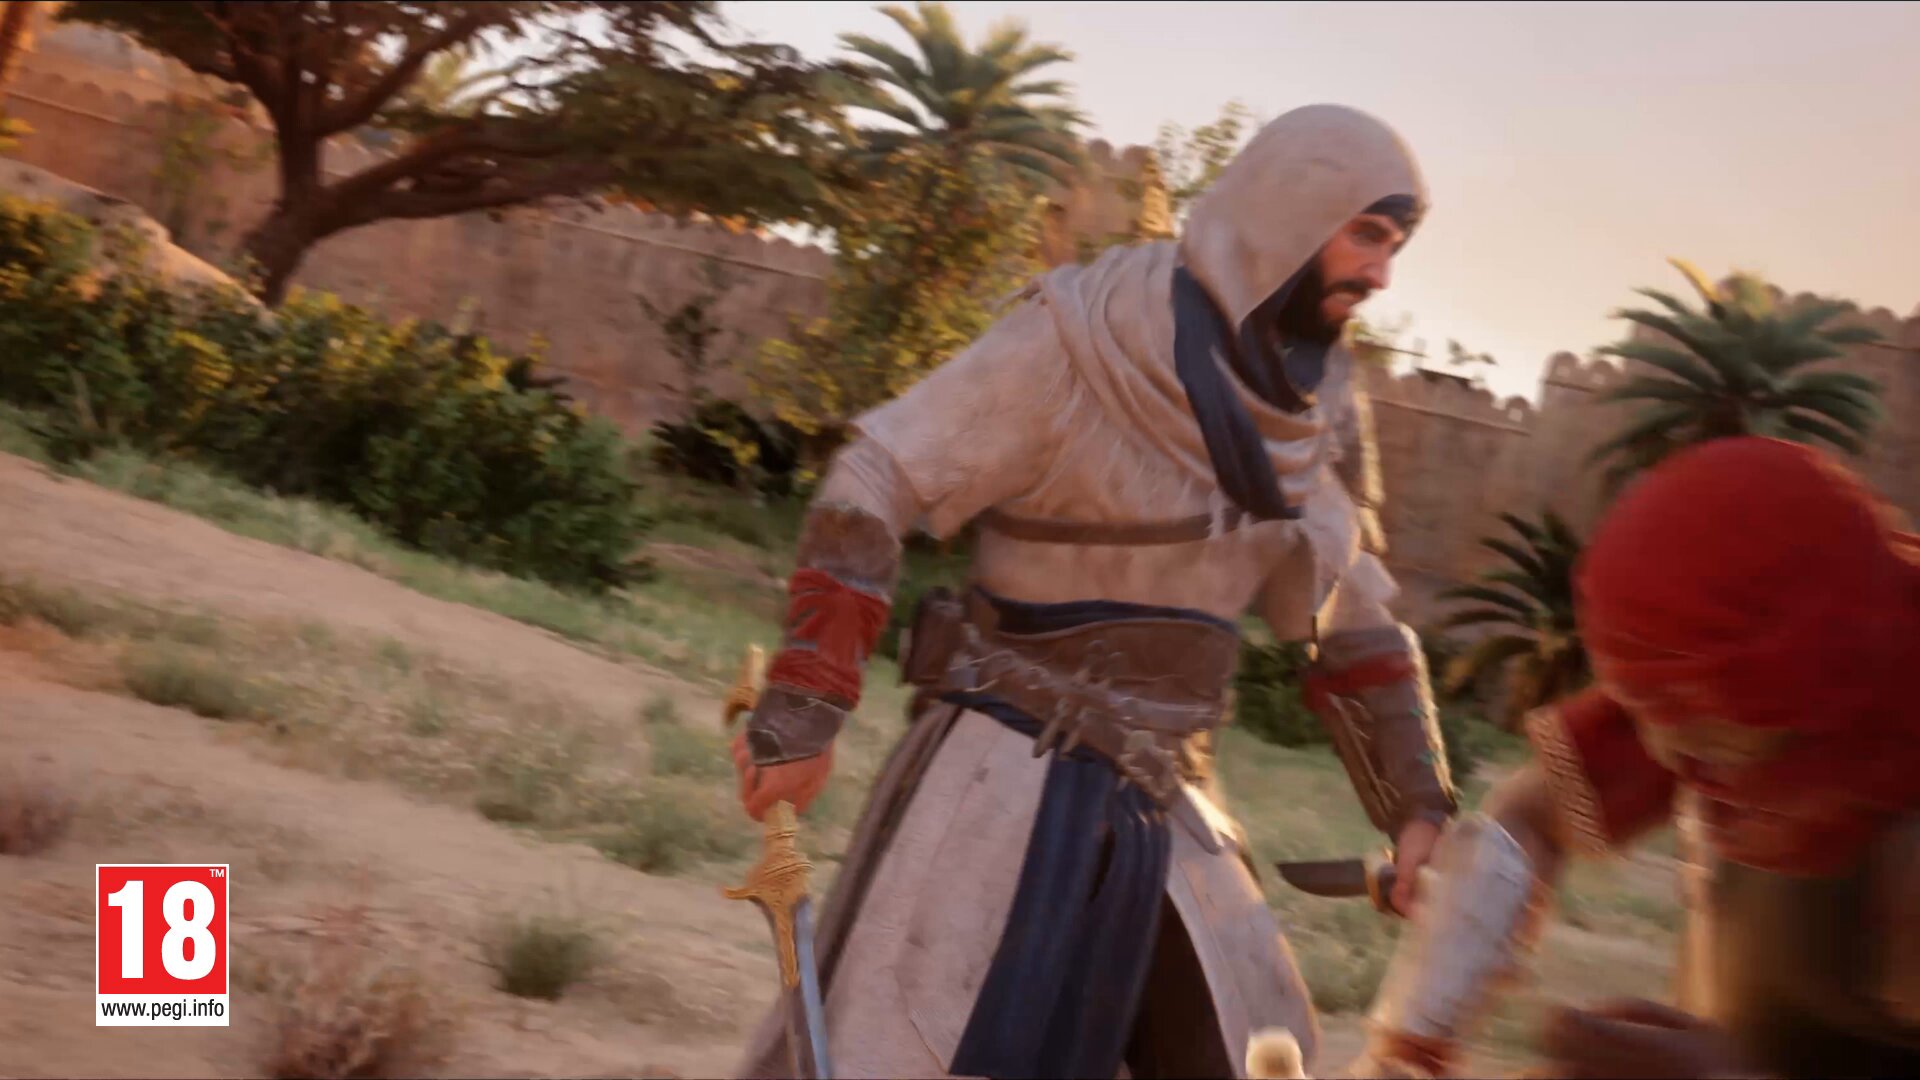 Assassin's Creed Mirage (@AssassinsDLC) / X